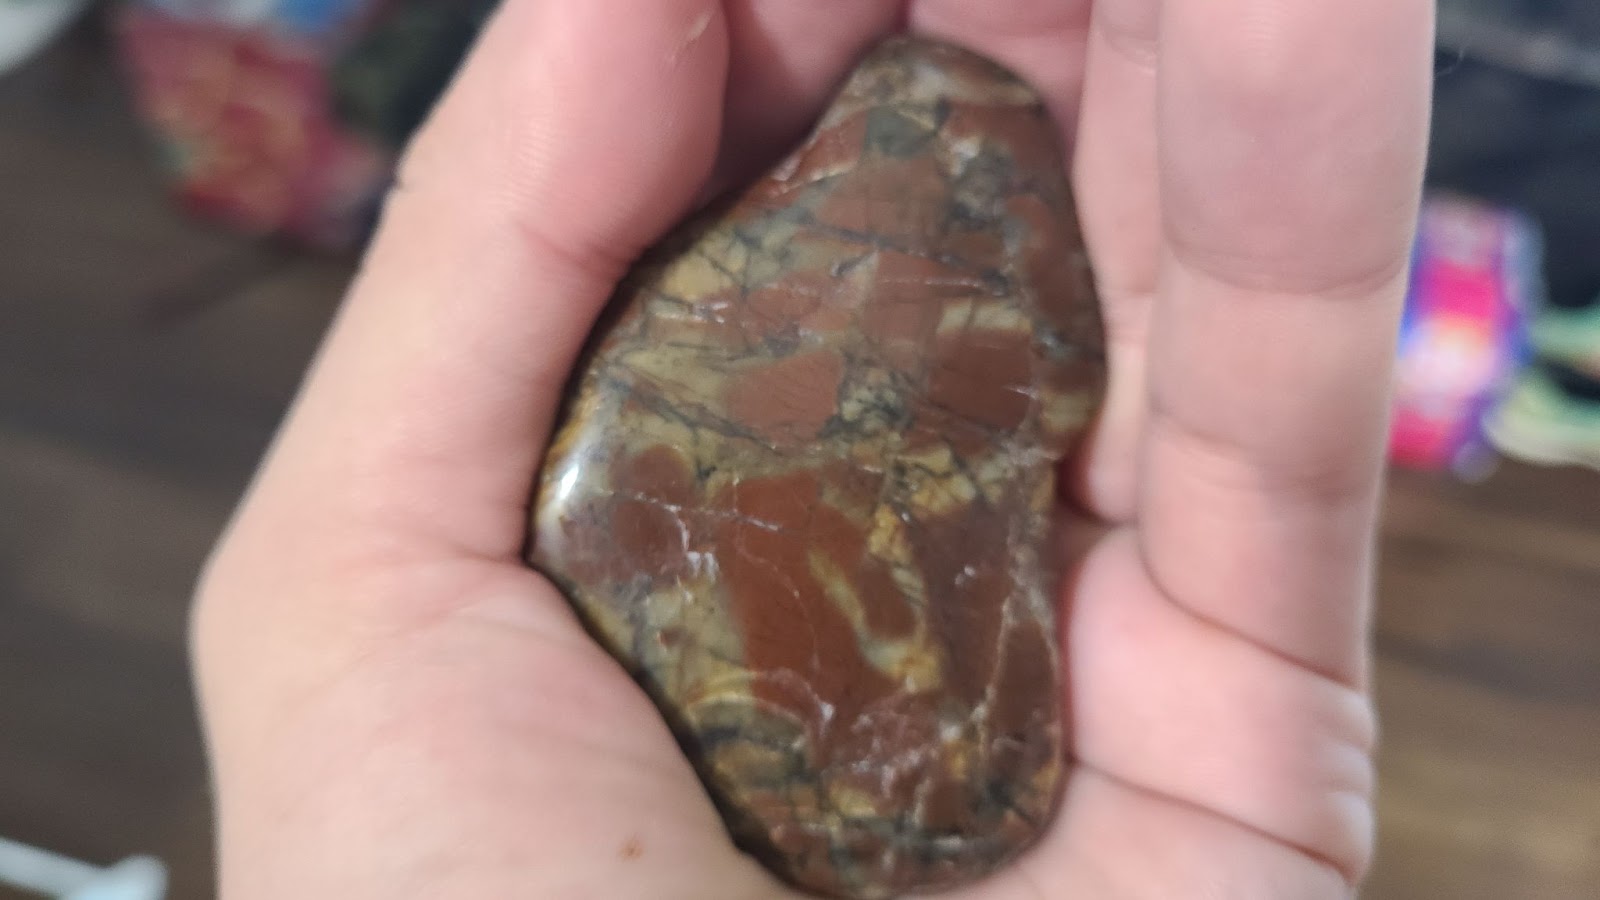 polished rock using sandpaper